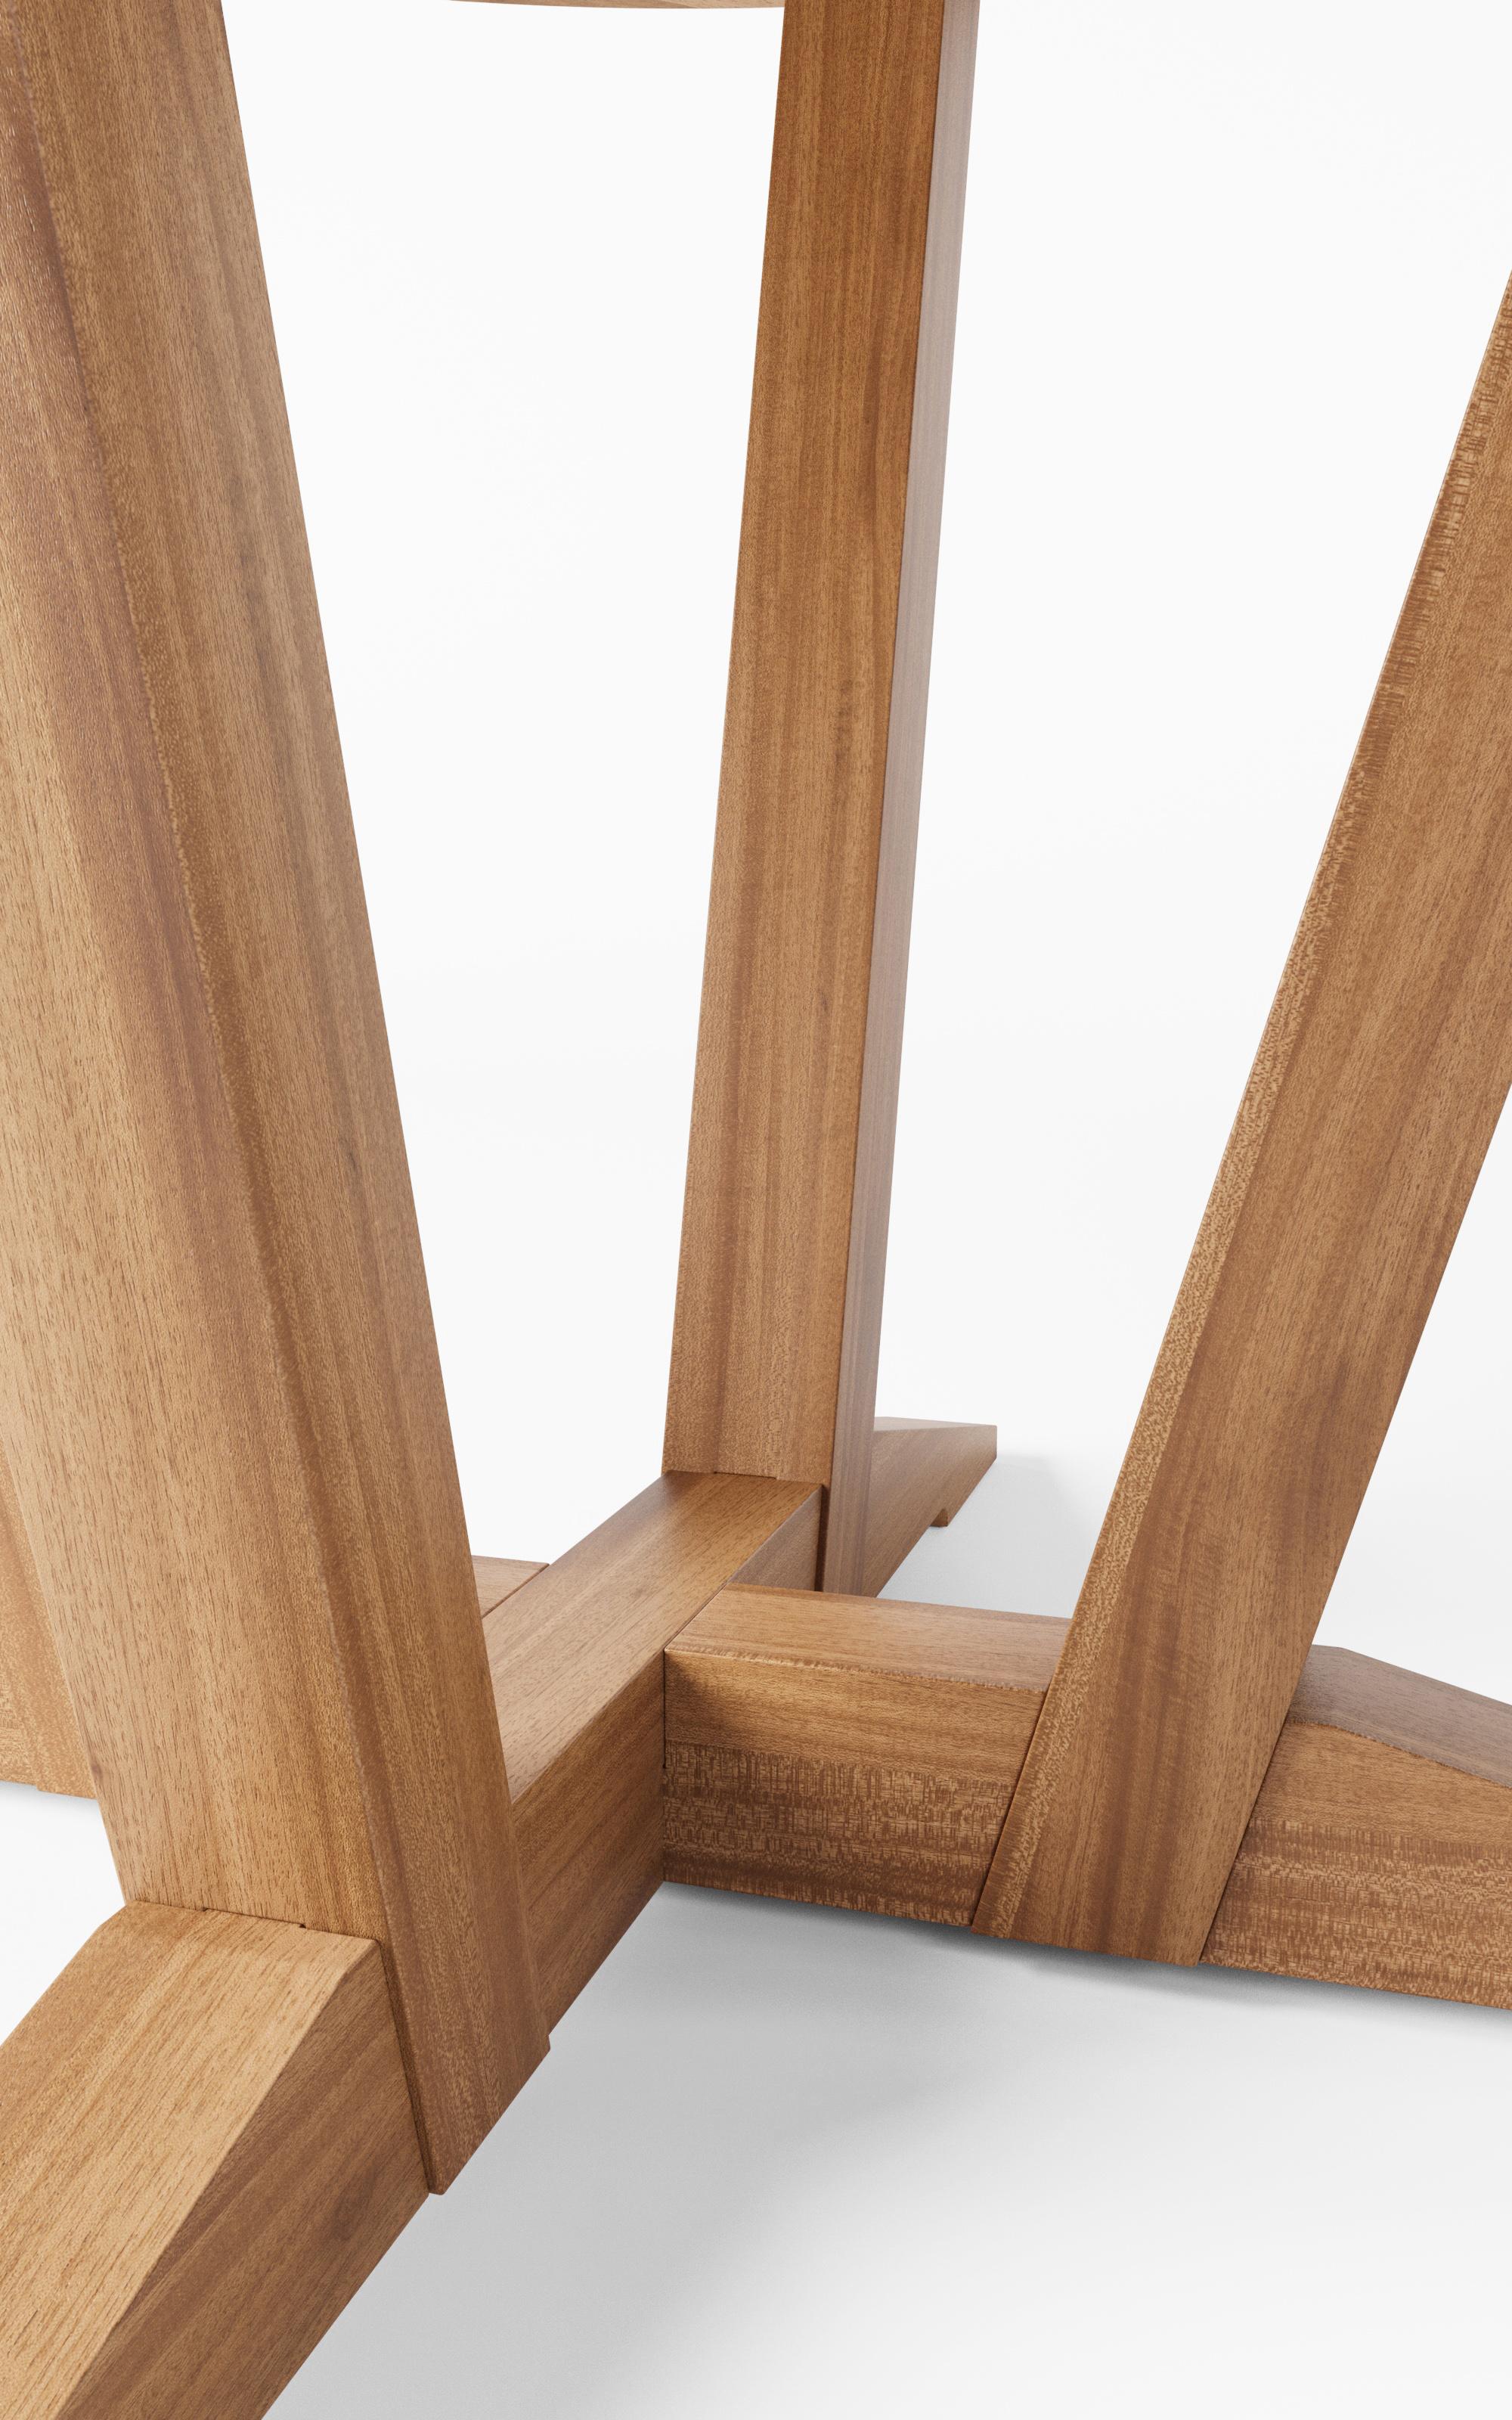 Fabriquée entièrement en bois massif, la table Leme est une pièce qui durera des décennies. Avec son pied central, son plateau circulaire et sa large base, il offre une excellente stabilité tout en laissant de la place pour toujours ajouter une